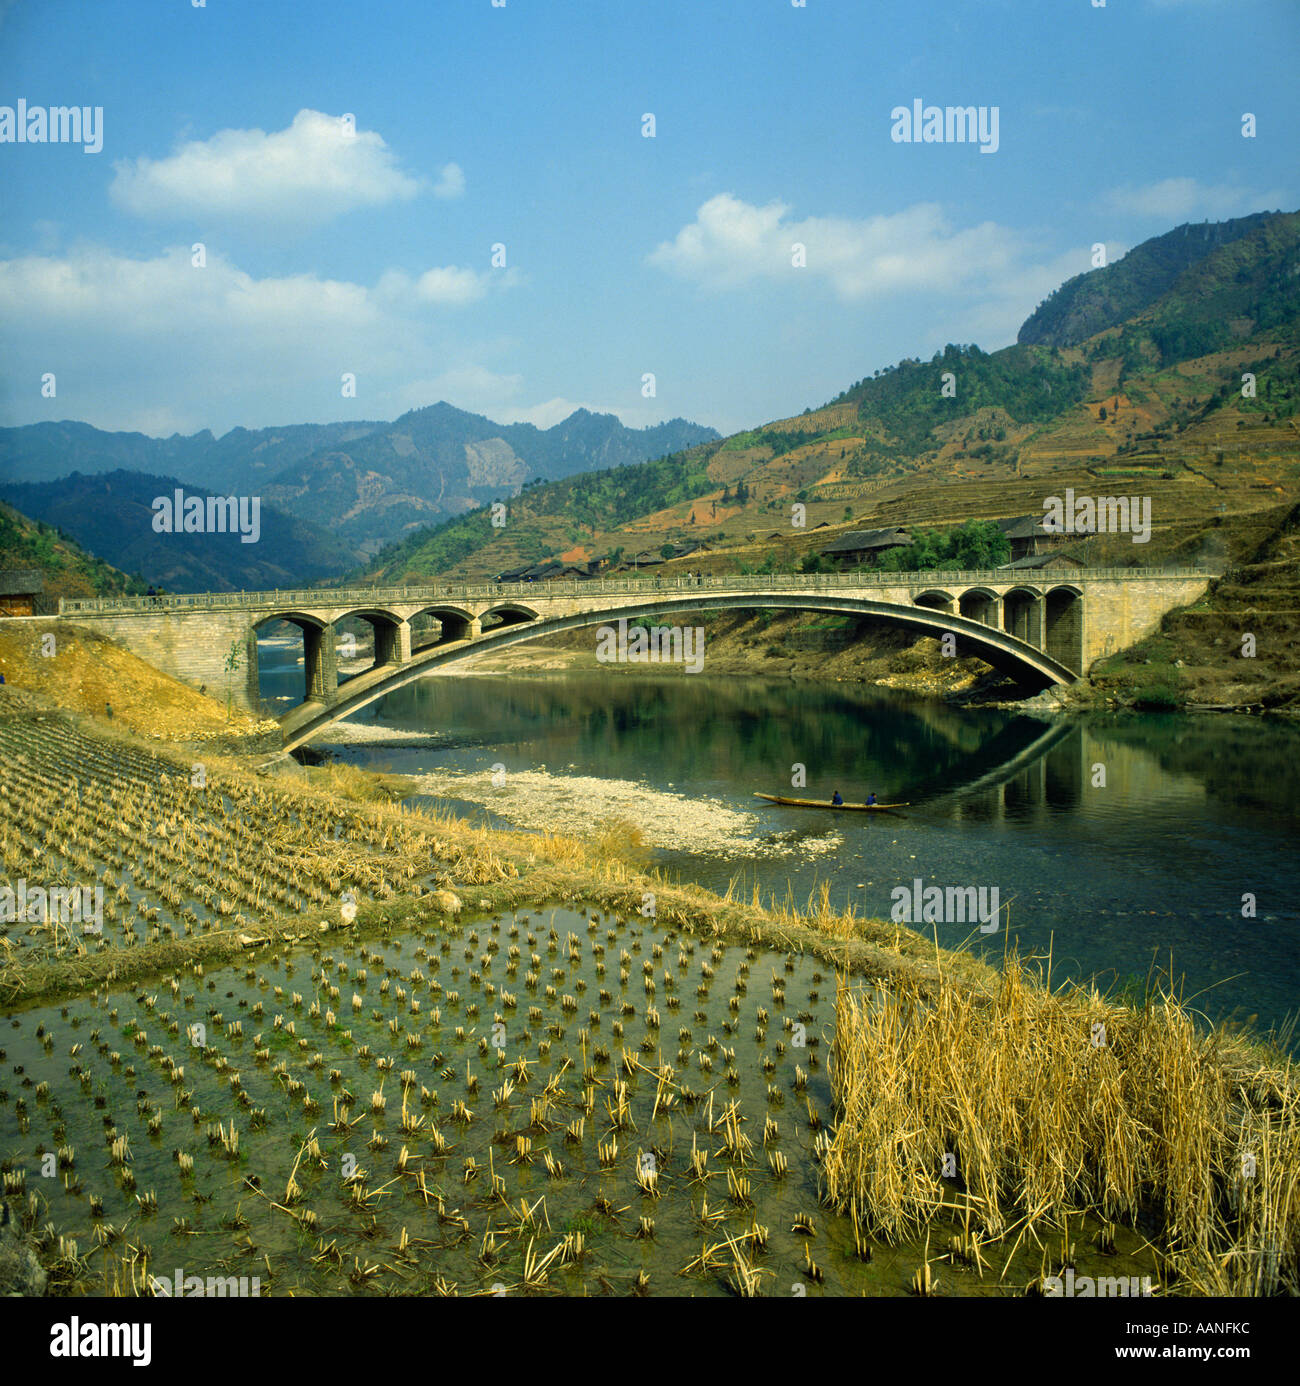 Gewölbte Brücke über einen Fluss Landschaft und Reis Reisfelder in der Longsheng autonomen Region in der Provinz Guangxi, China Stockfoto